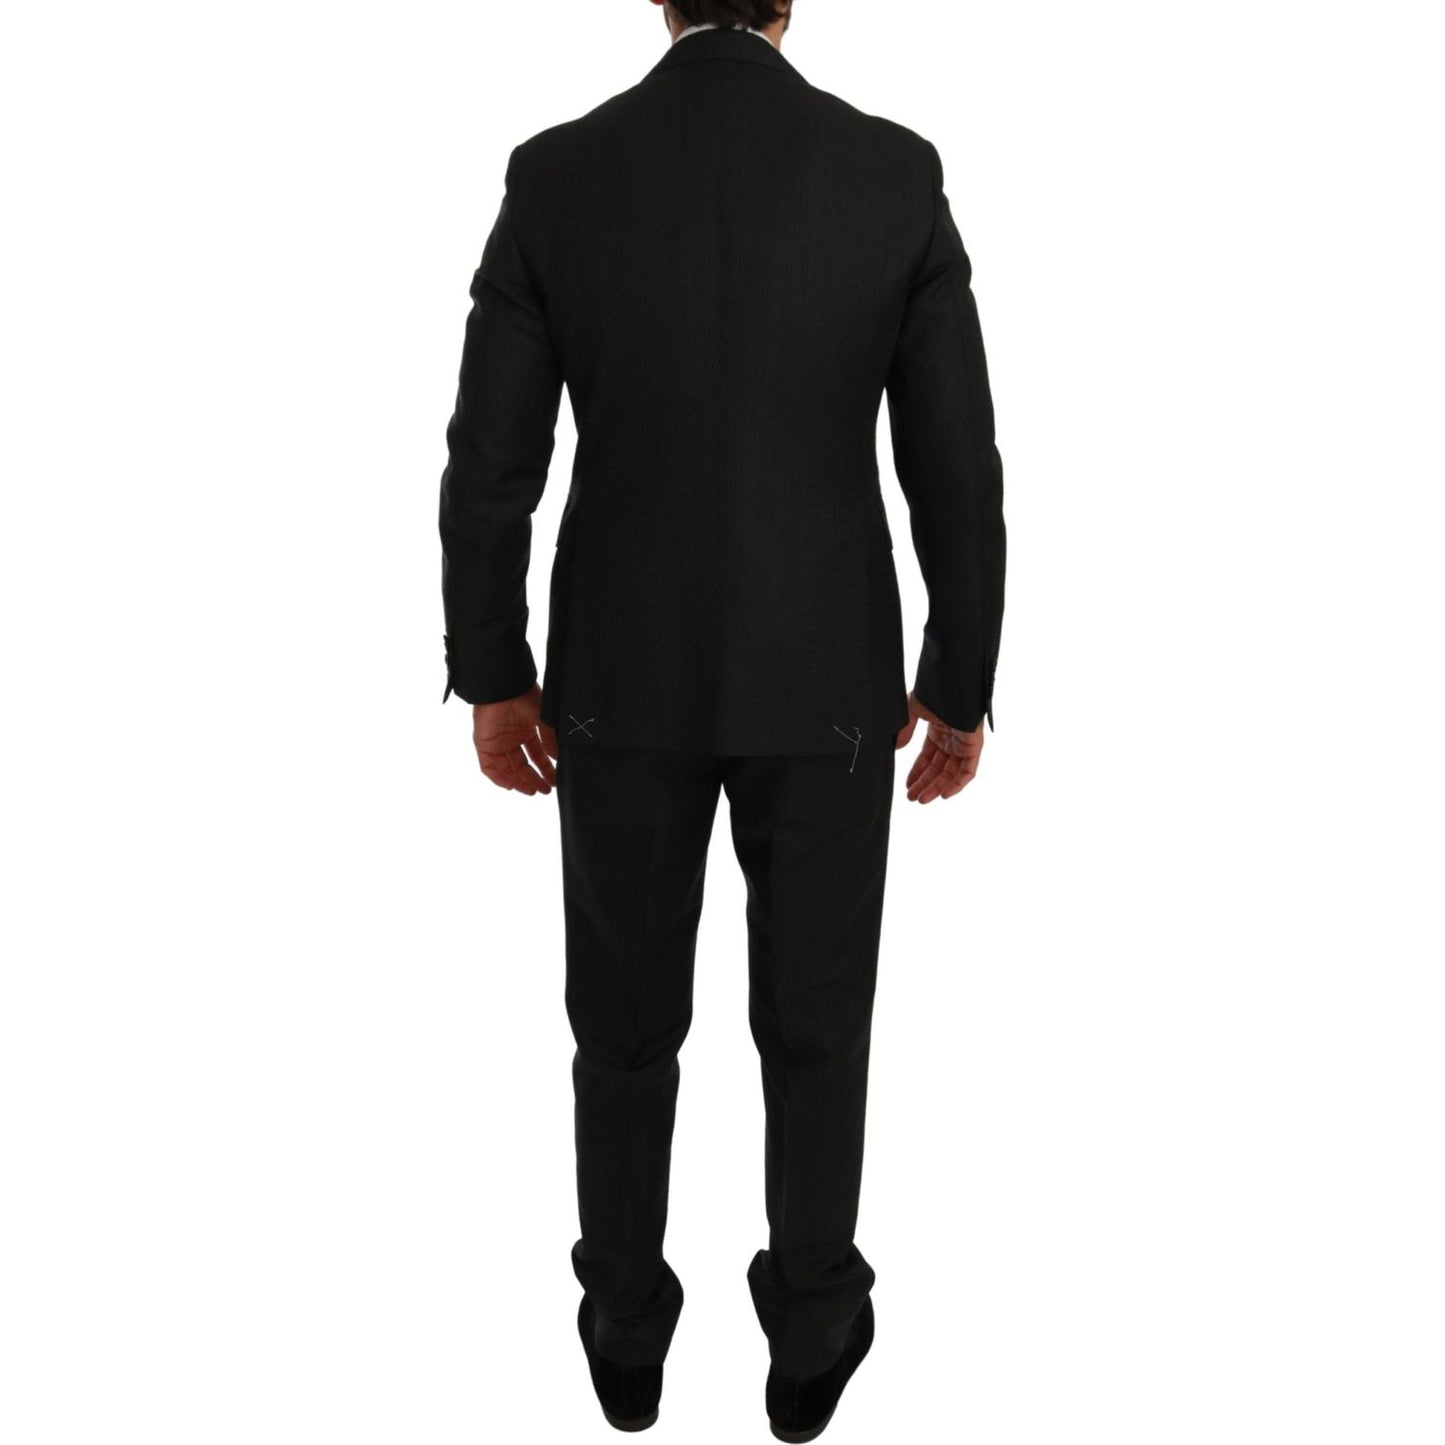 Elegant Black Crystal-Embellished Two-Piece Suit